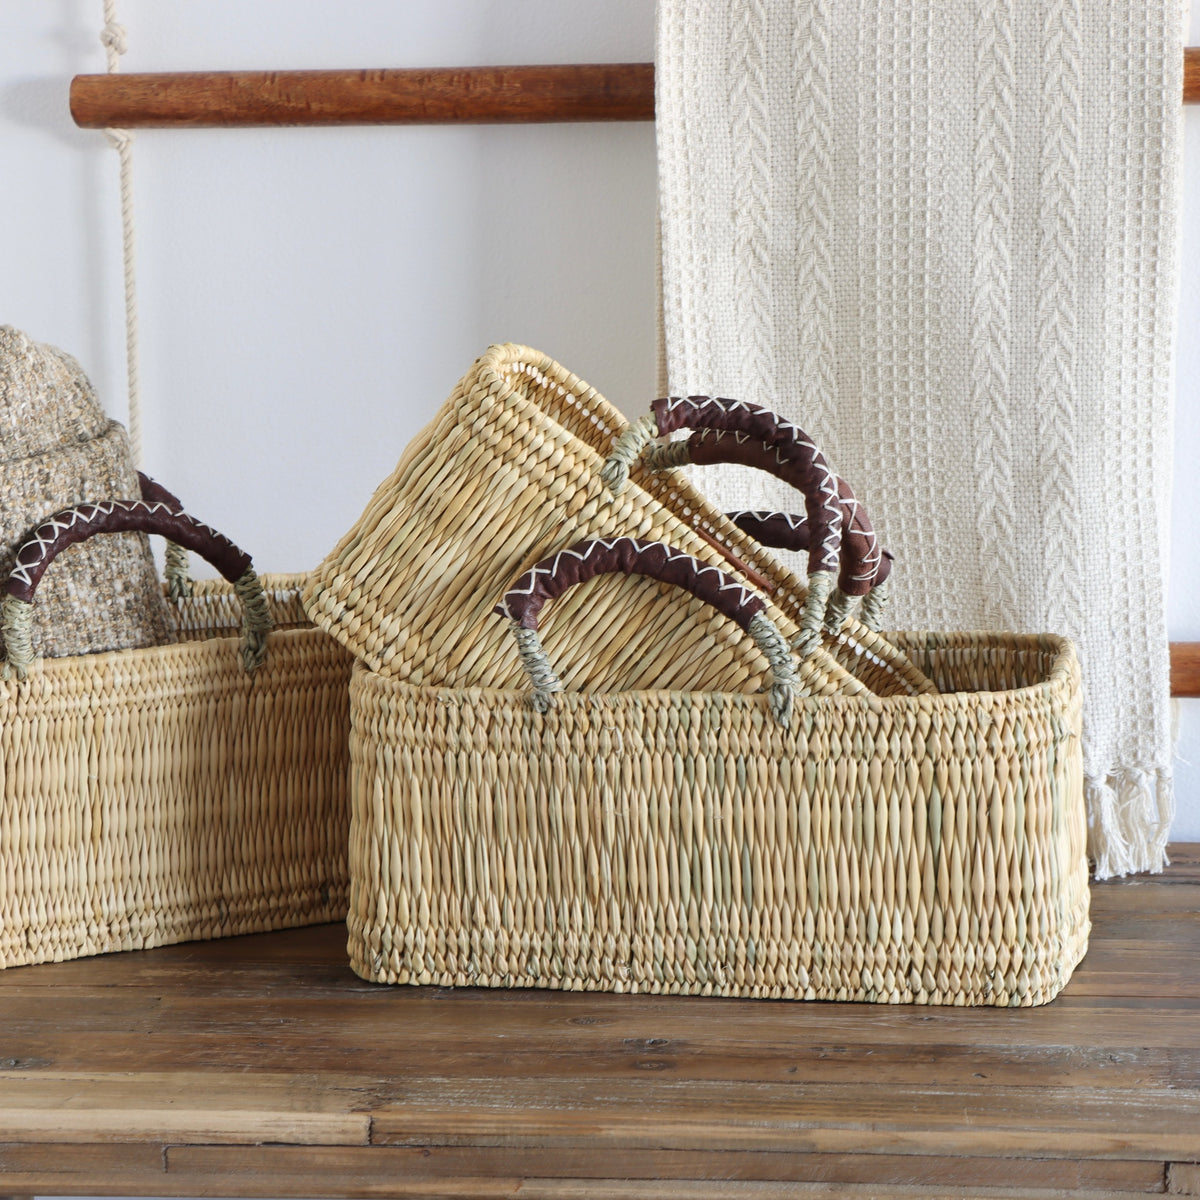 Market Reed &amp; Leather Baskets - Set of 3 - Holistic Habitat 